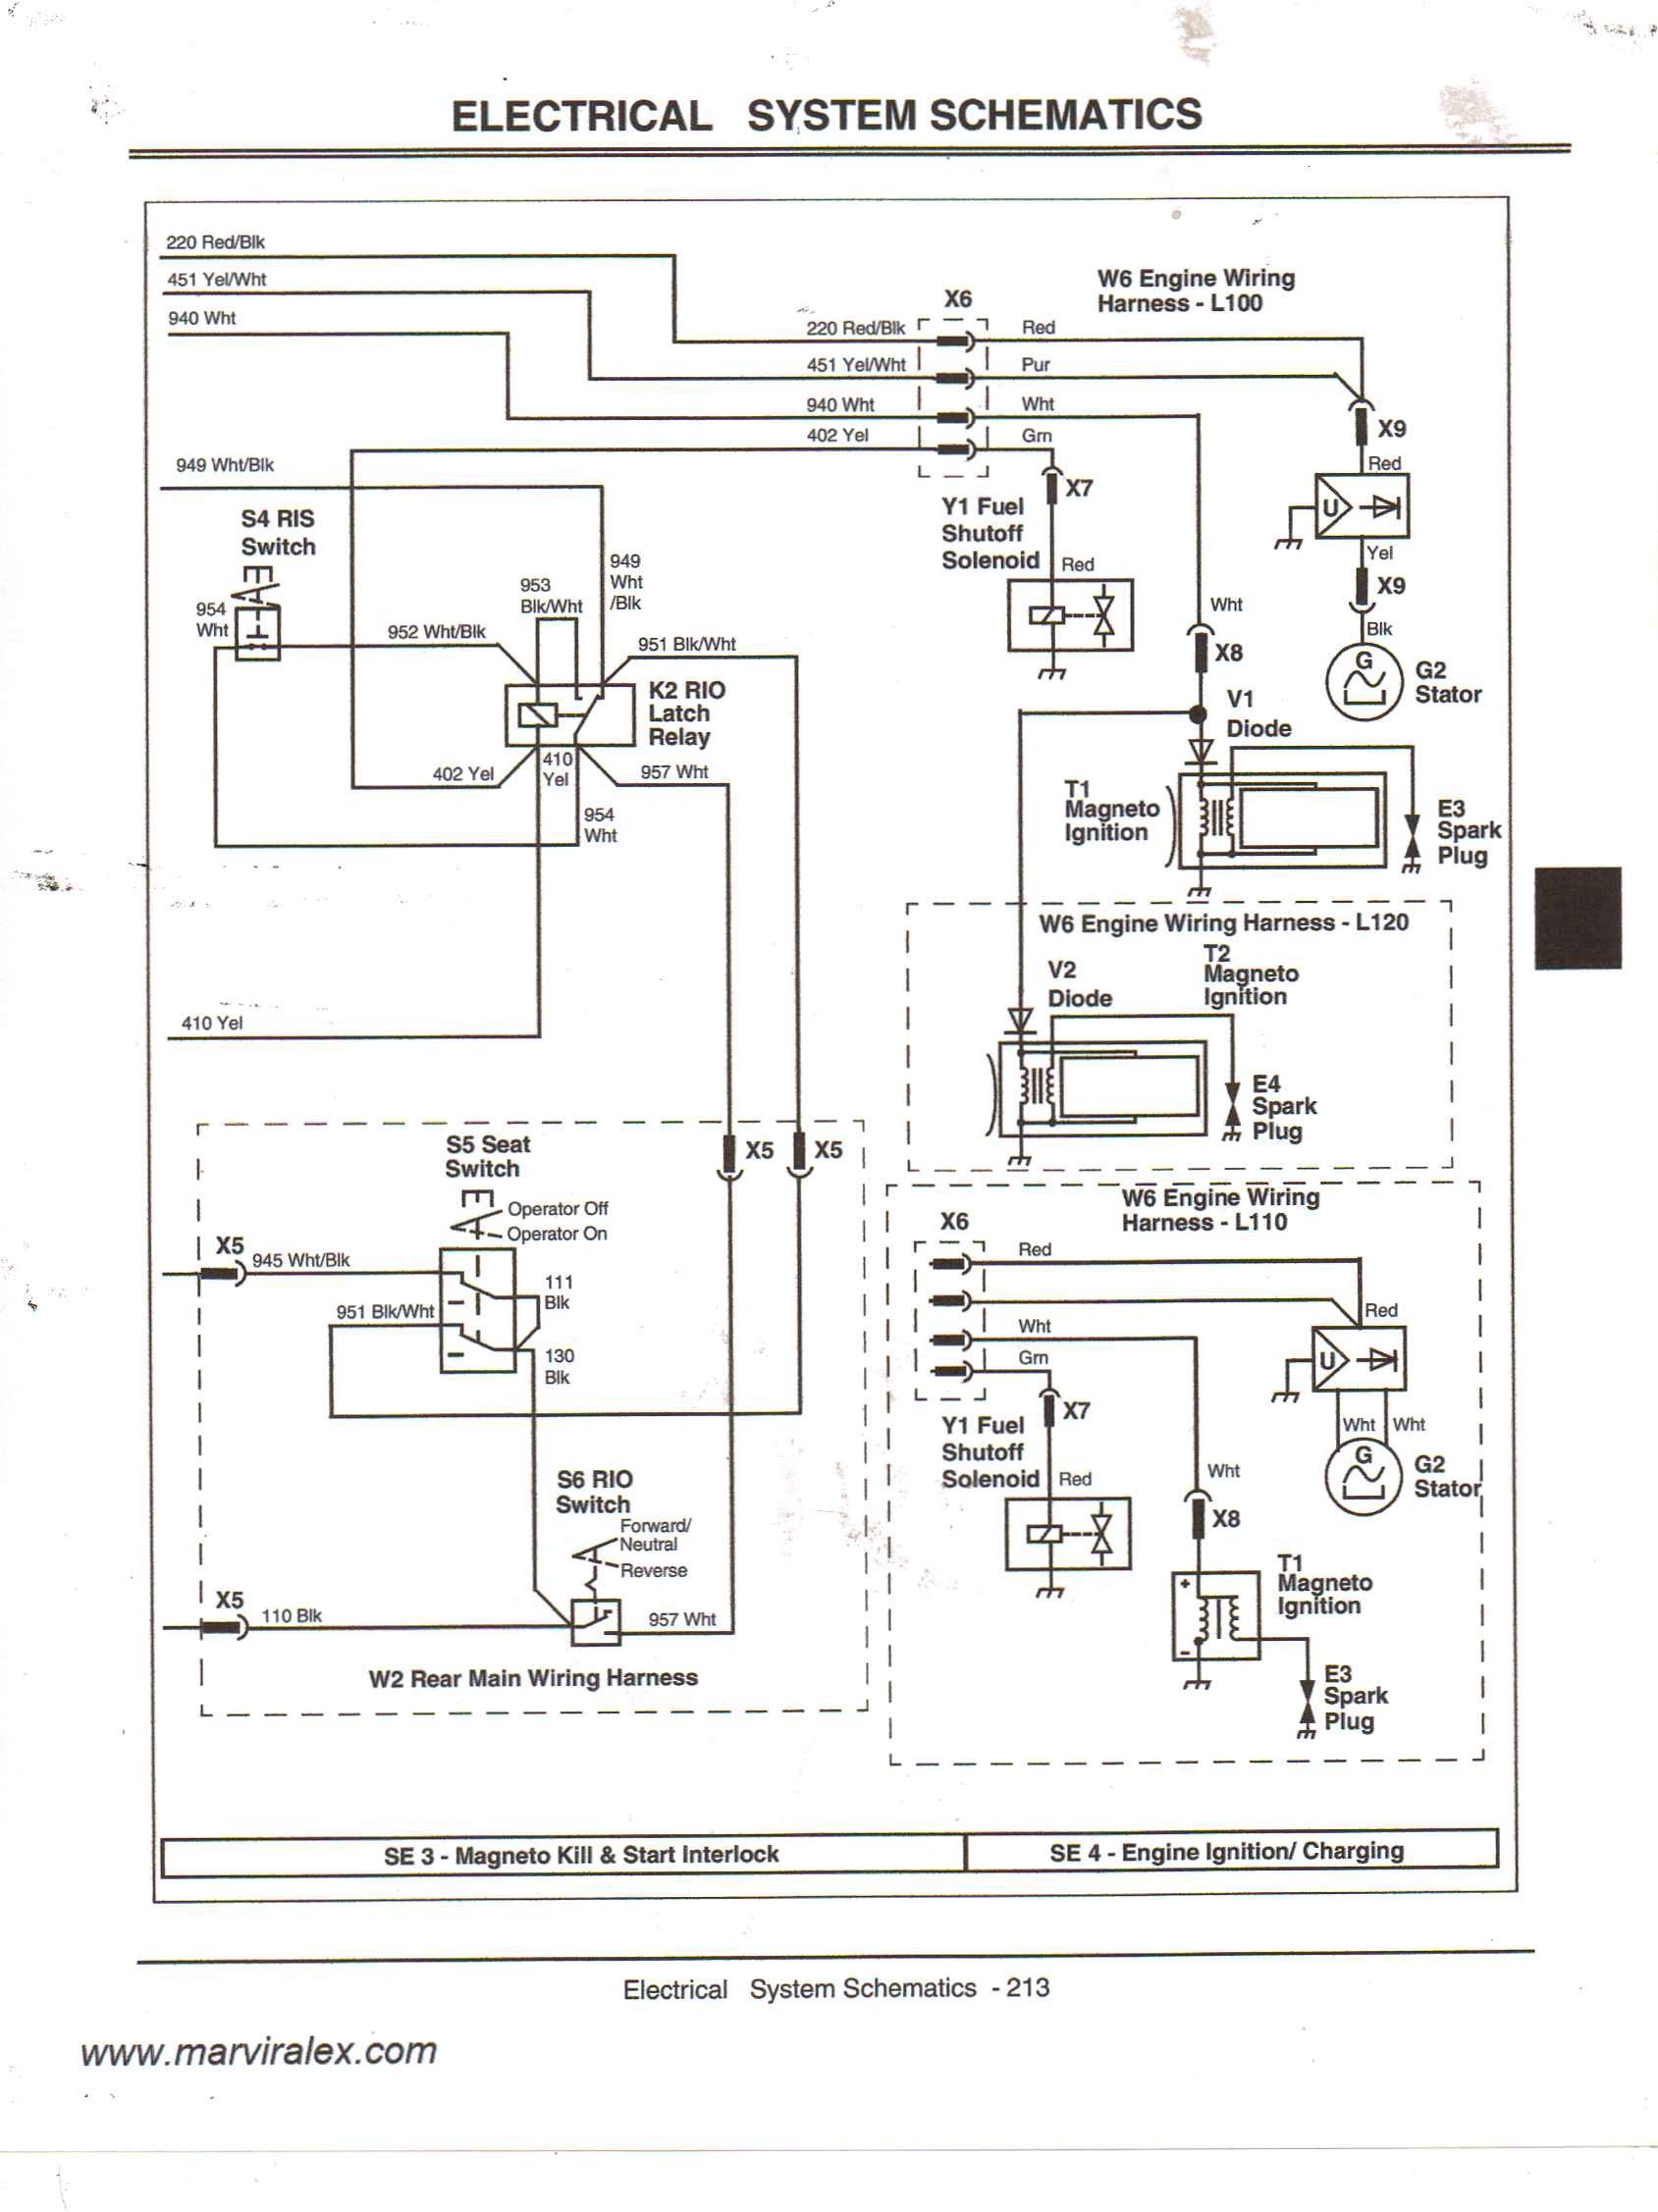 John Deere 100 Series Wiring Diagram Electrical Wiring John Deere Gator Hpx Wiring Diagram Electrical